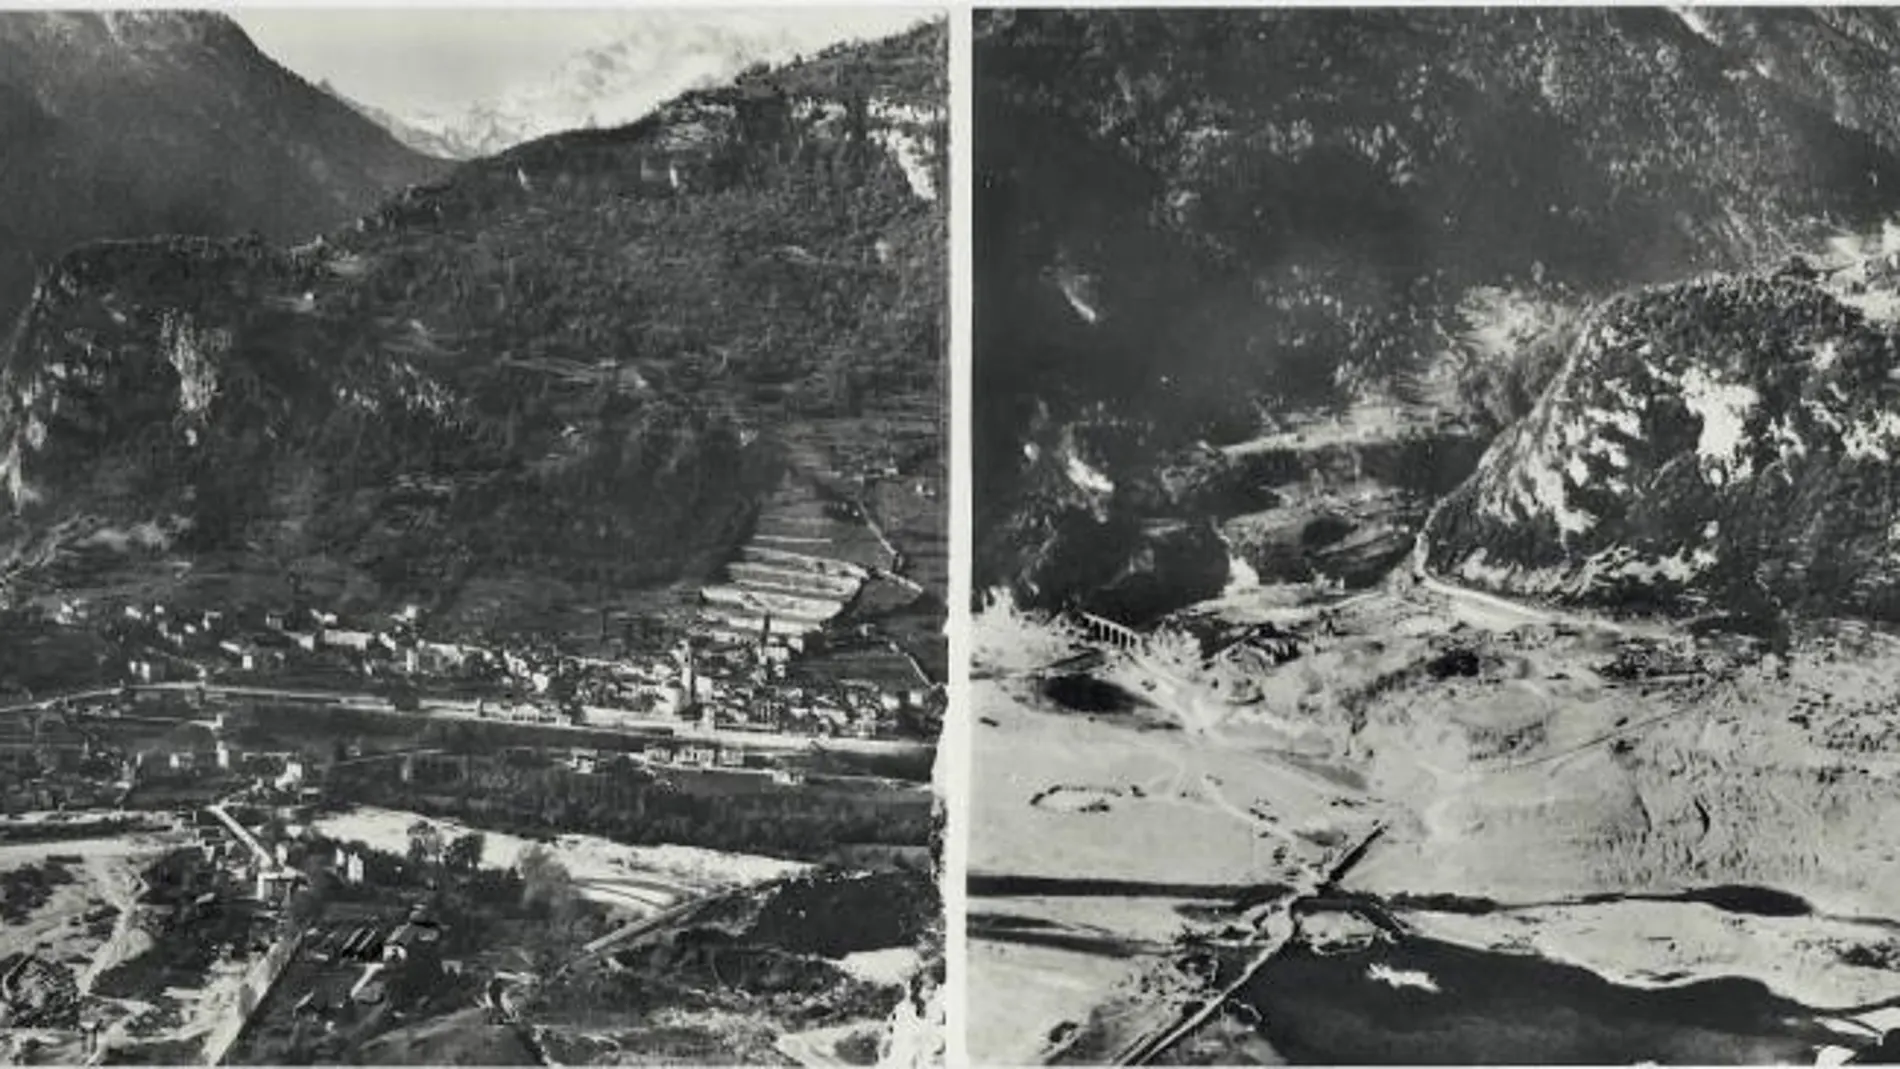 El pueblo de Longarone (Italia) vivió el mayor desastre de Europa en el siglo XX. A la izquierda, la villa antes de la riada. A la derecha, tras el paso del agua